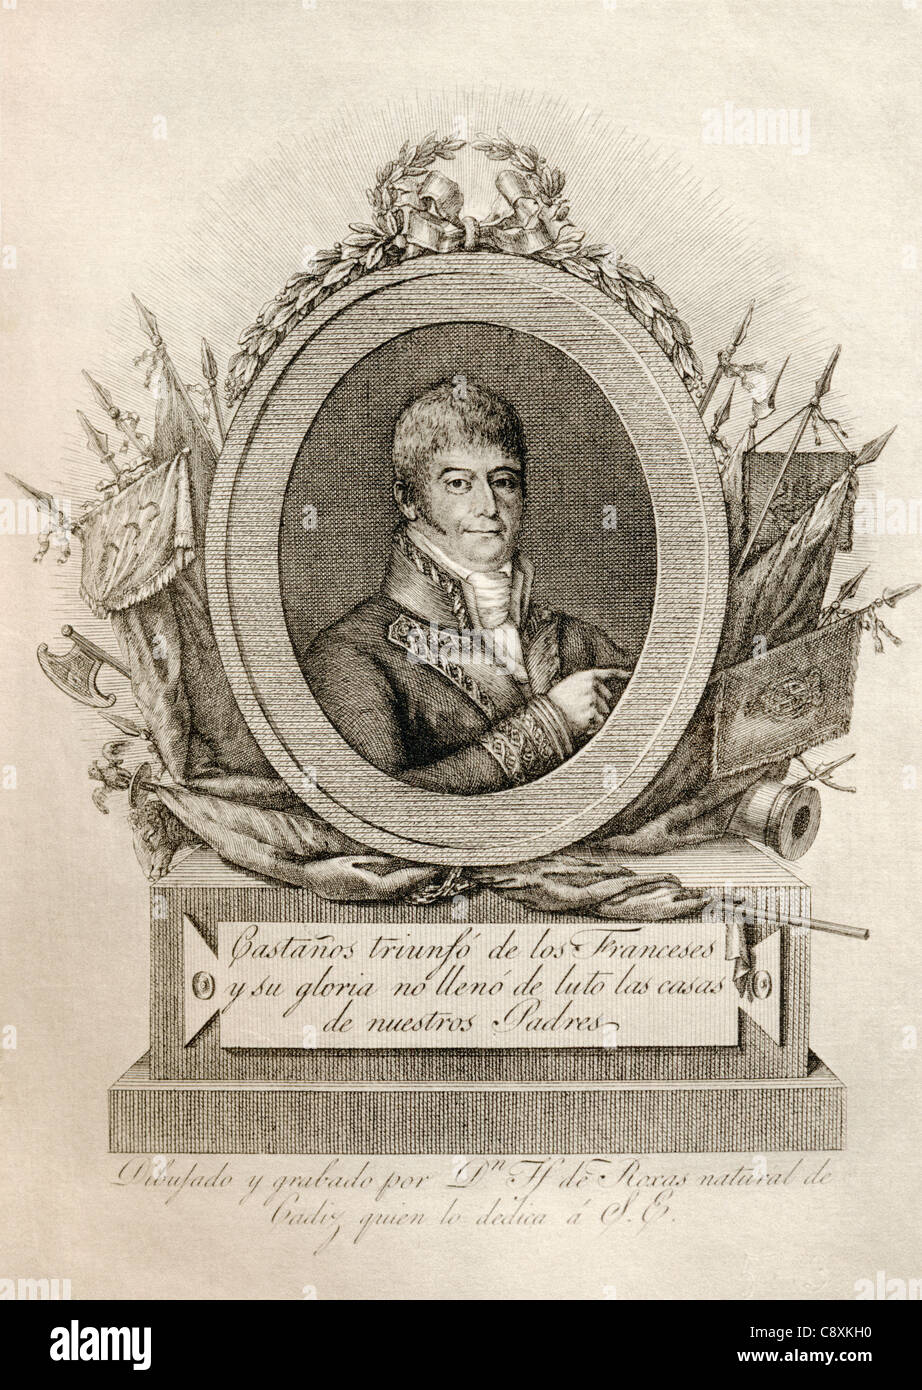 Don Francisco Javier Castaños Aragorri Urioste y Olavide, Conde de Castaños y Aragones, primer Duque de Bailén, 1758 — 1852. Stock Photo